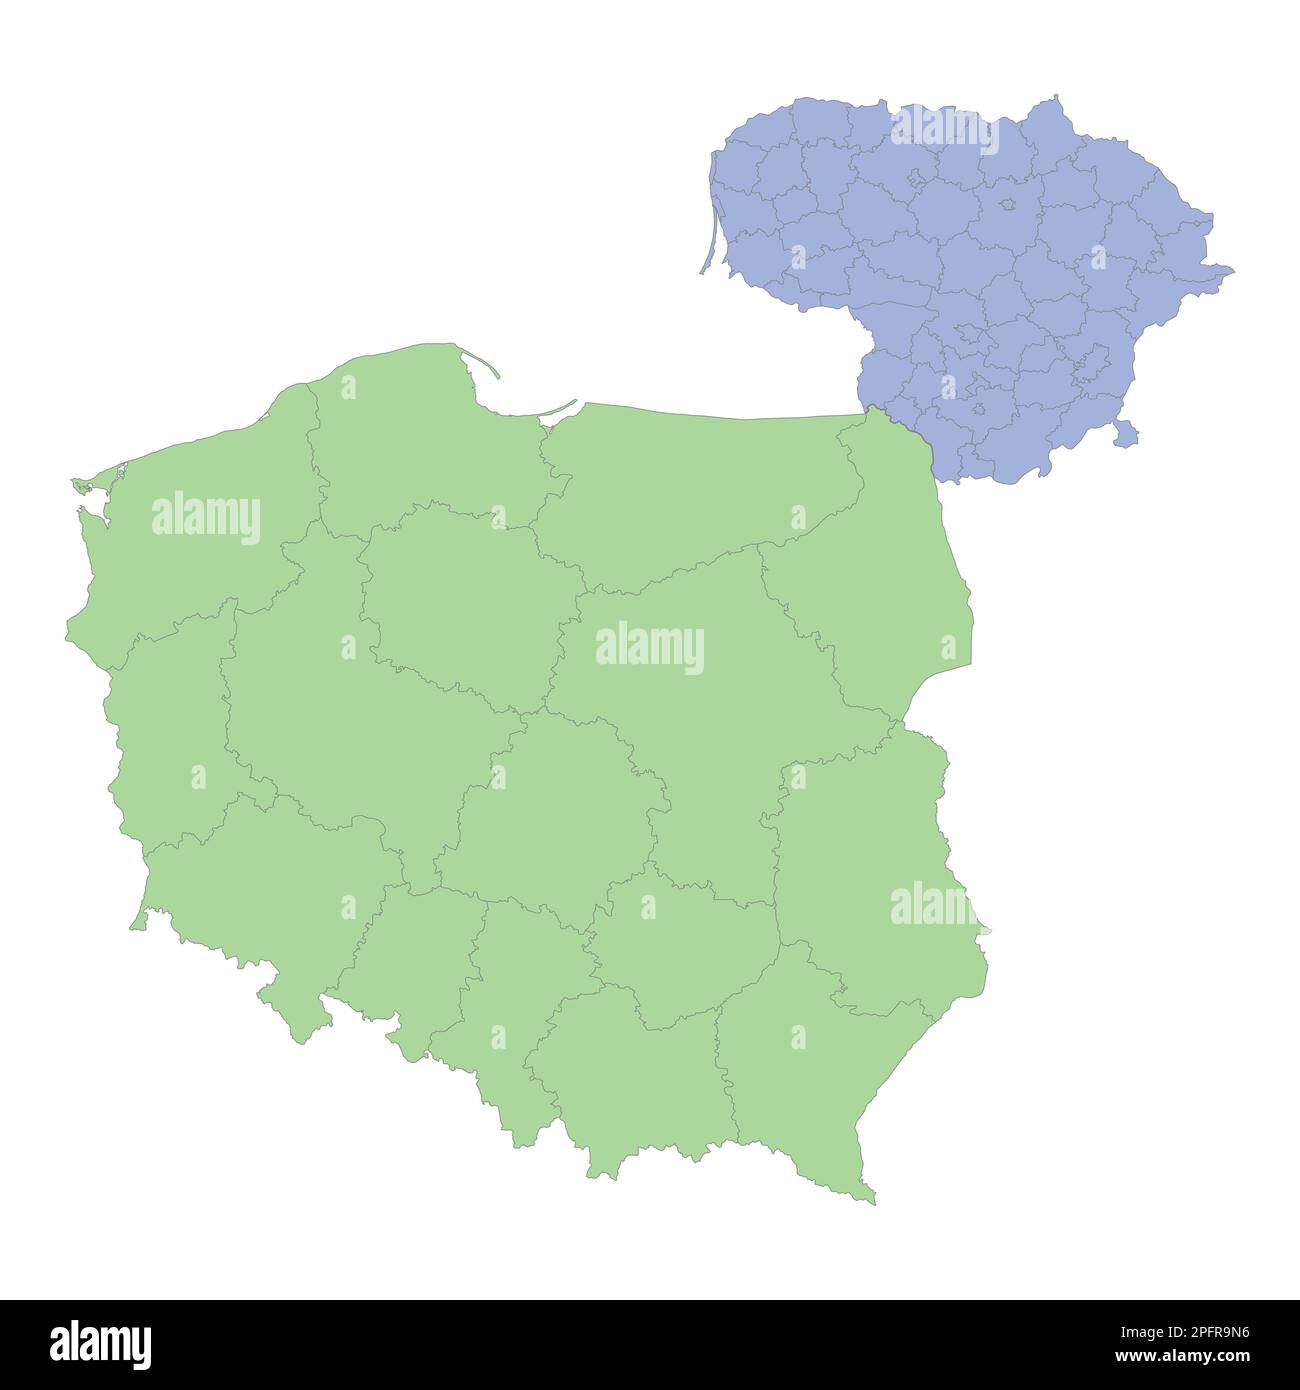 Mappa politica di alta qualità della Polonia e della Lituania con i confini delle regioni o delle province. Illustrazione vettoriale Illustrazione Vettoriale